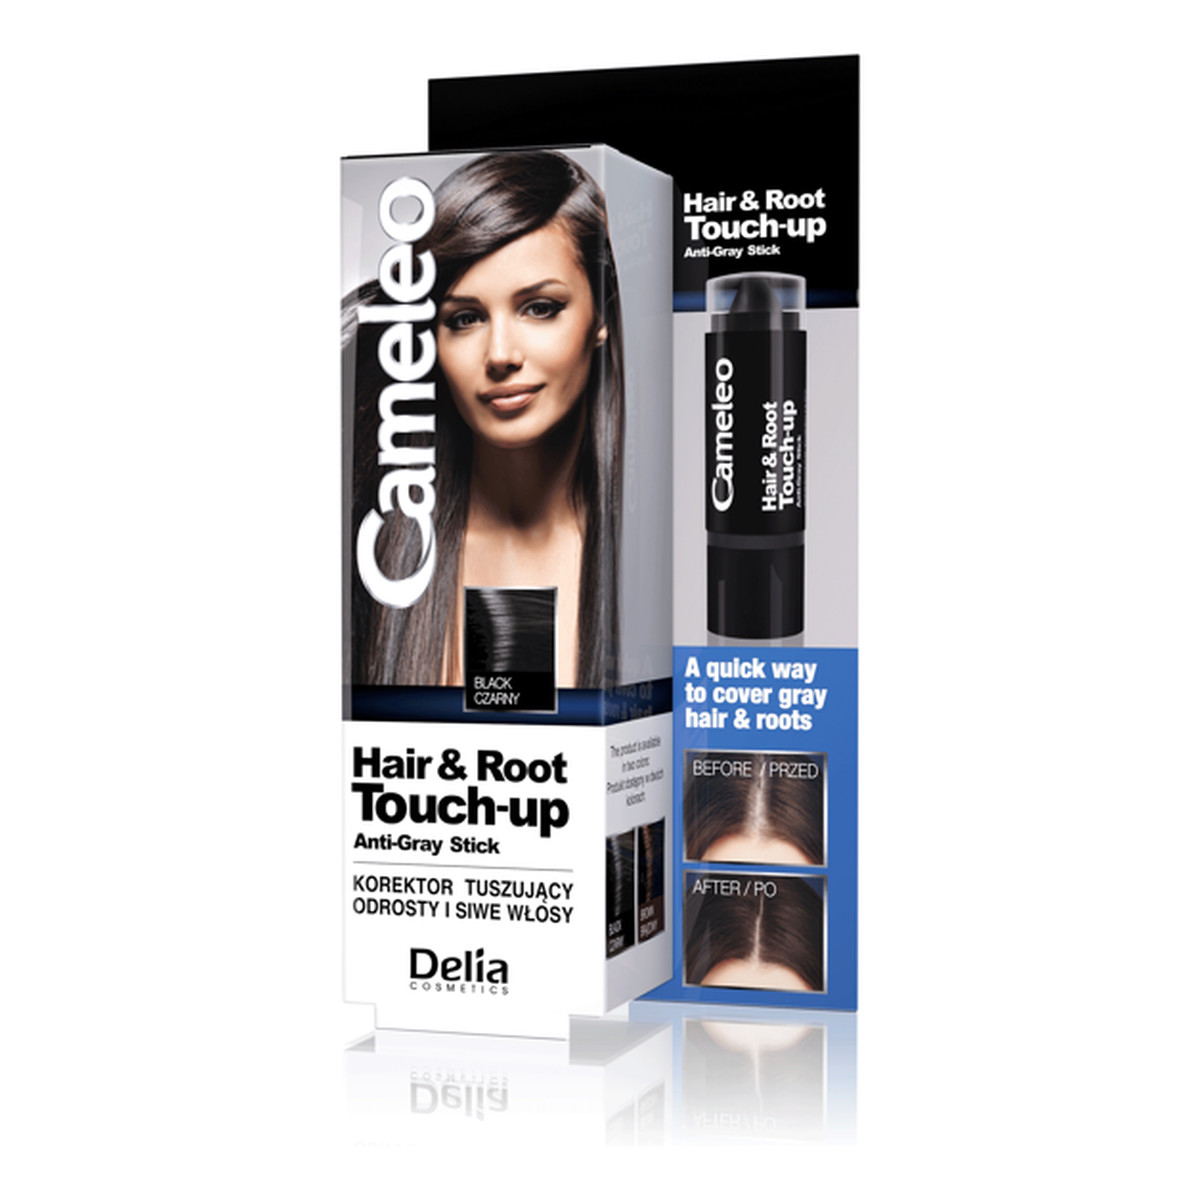 Cameleo Hair & Root Touch-Up korektor tuszujący odrosty i siwe włosy